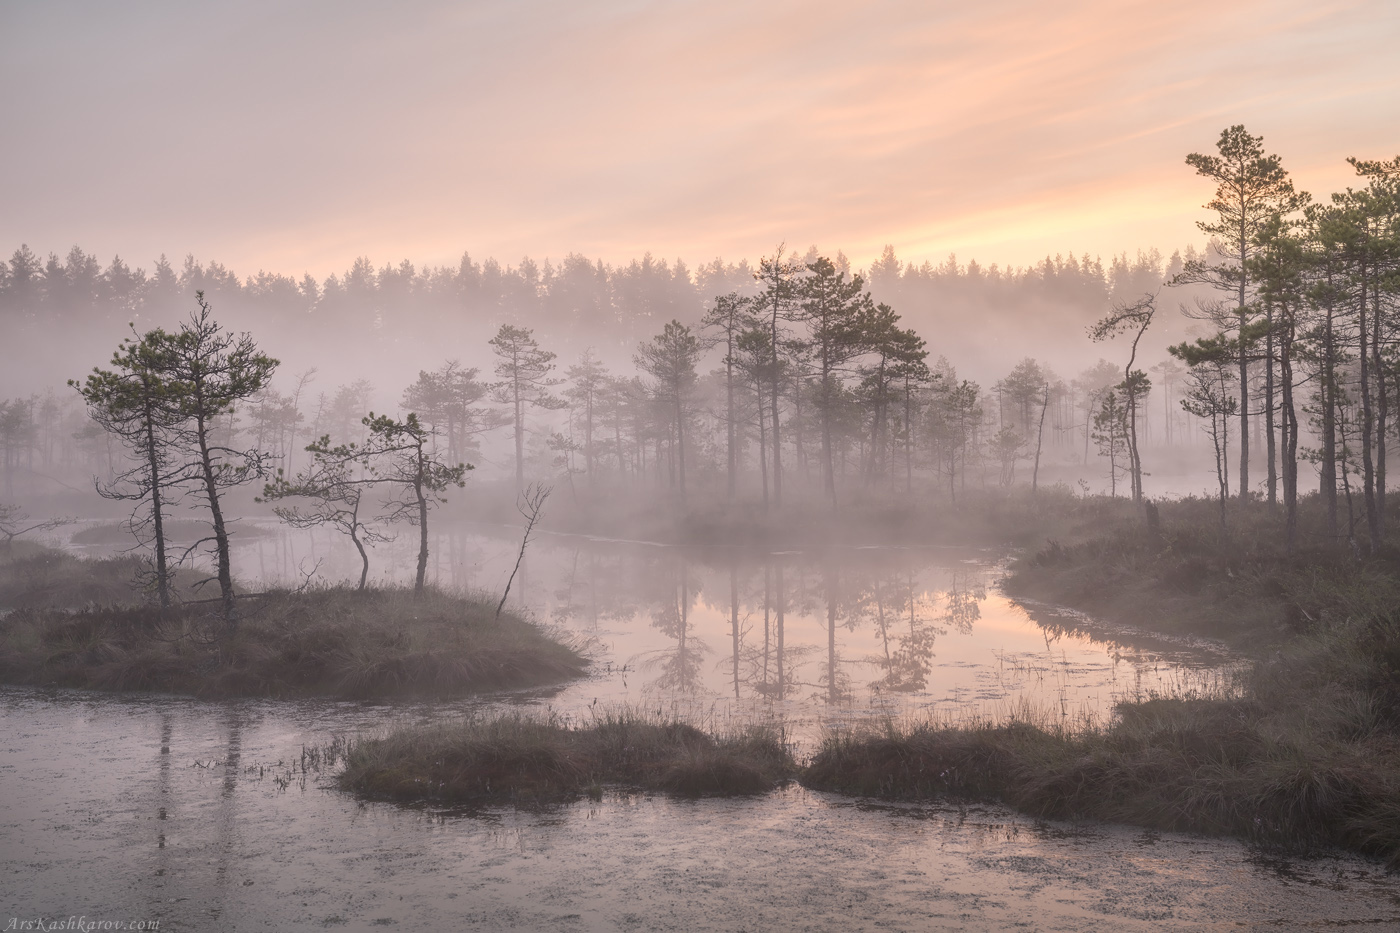 болота, природа ленинградской области, пейзажи ленобласти, утренний туман, живопись северных болот, фототур, мочажина, Арсений Кашкаров